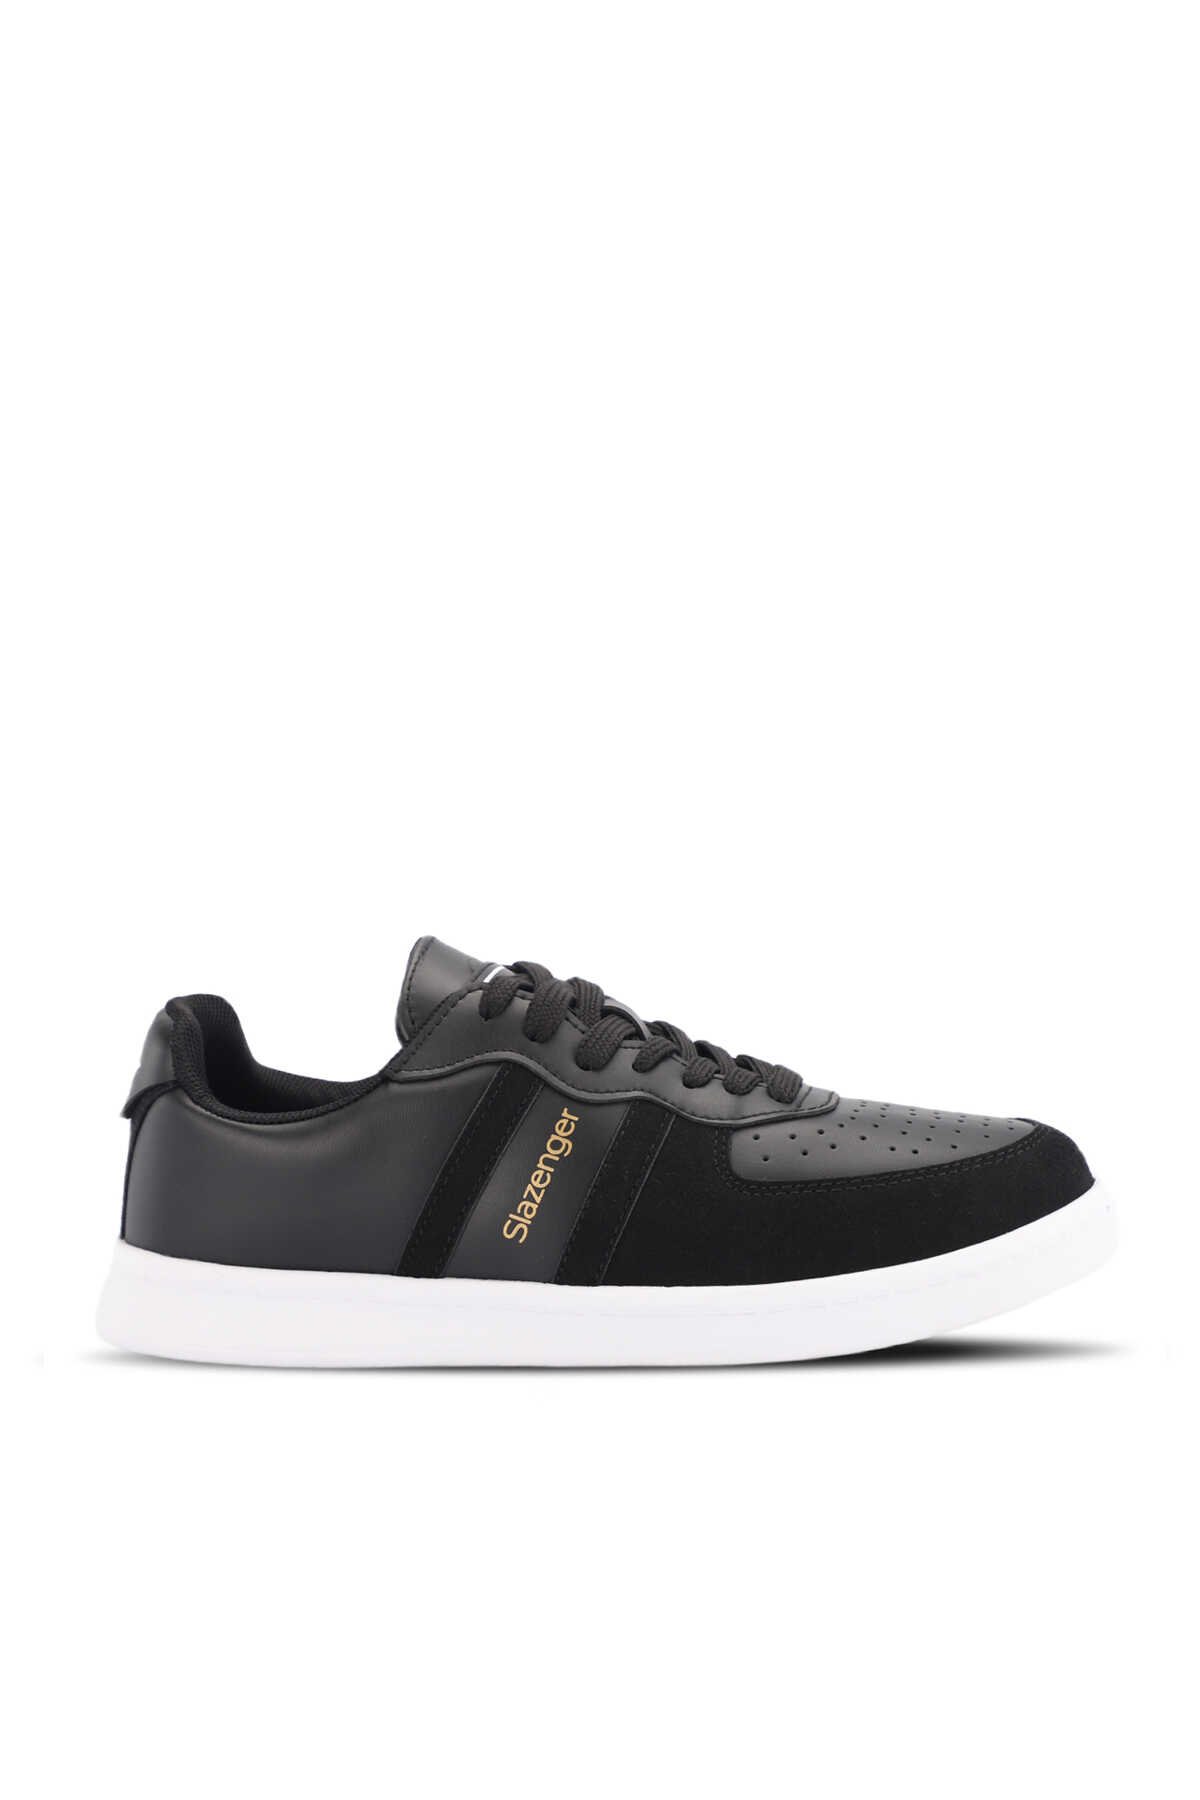 Slazenger - MALKHAZ Sneaker Kadın Ayakkabı Siyah / Beyaz